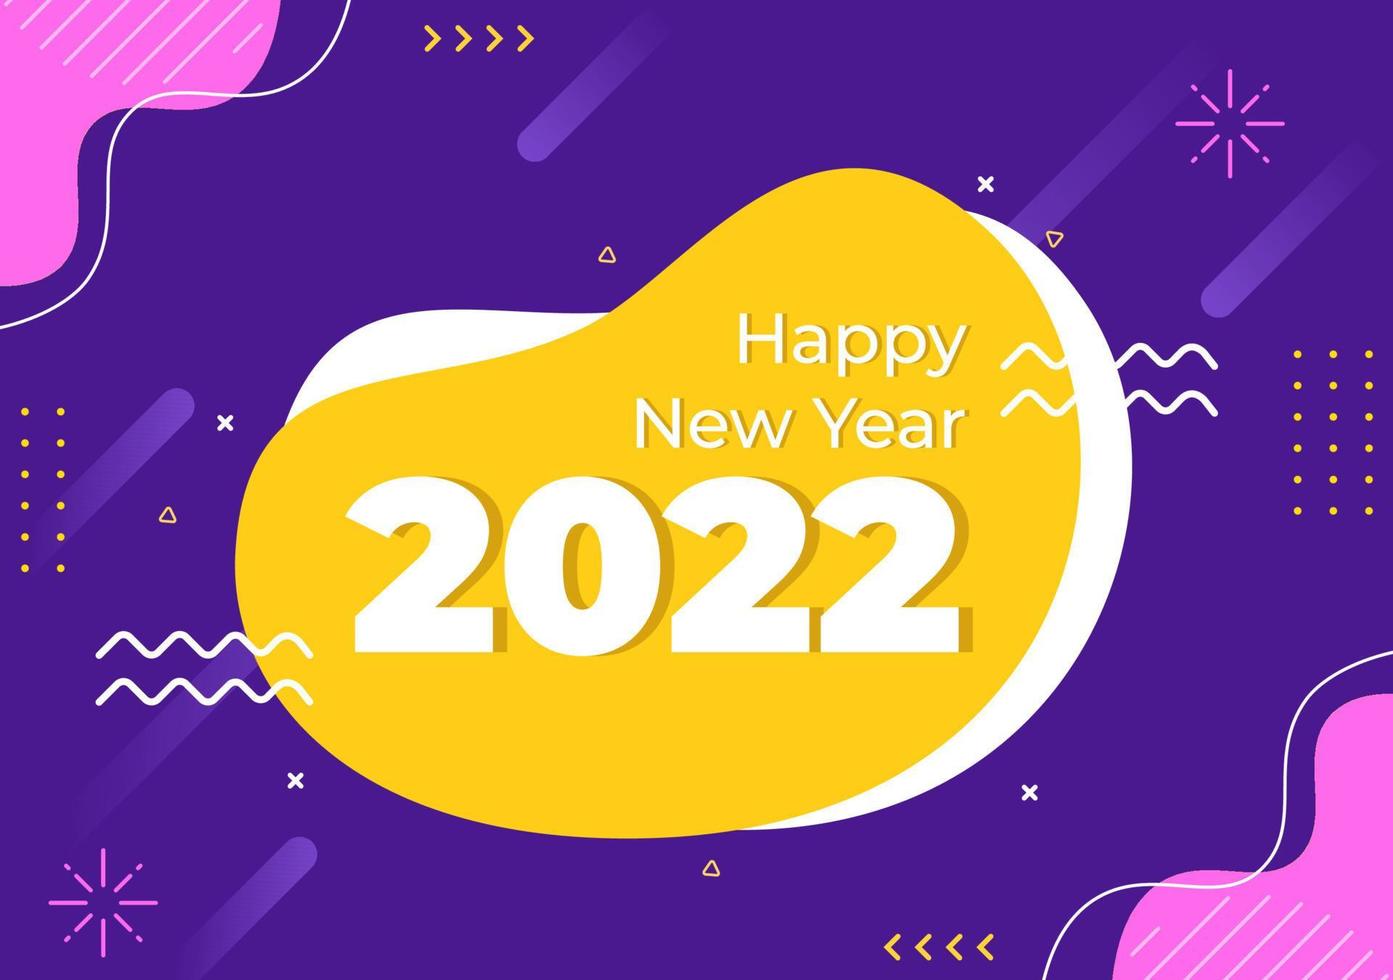 Feliz año nuevo 2022 ilustración de diseño plano de plantilla con cintas y confeti sobre un fondo colorido para carteles, folletos o pancartas vector